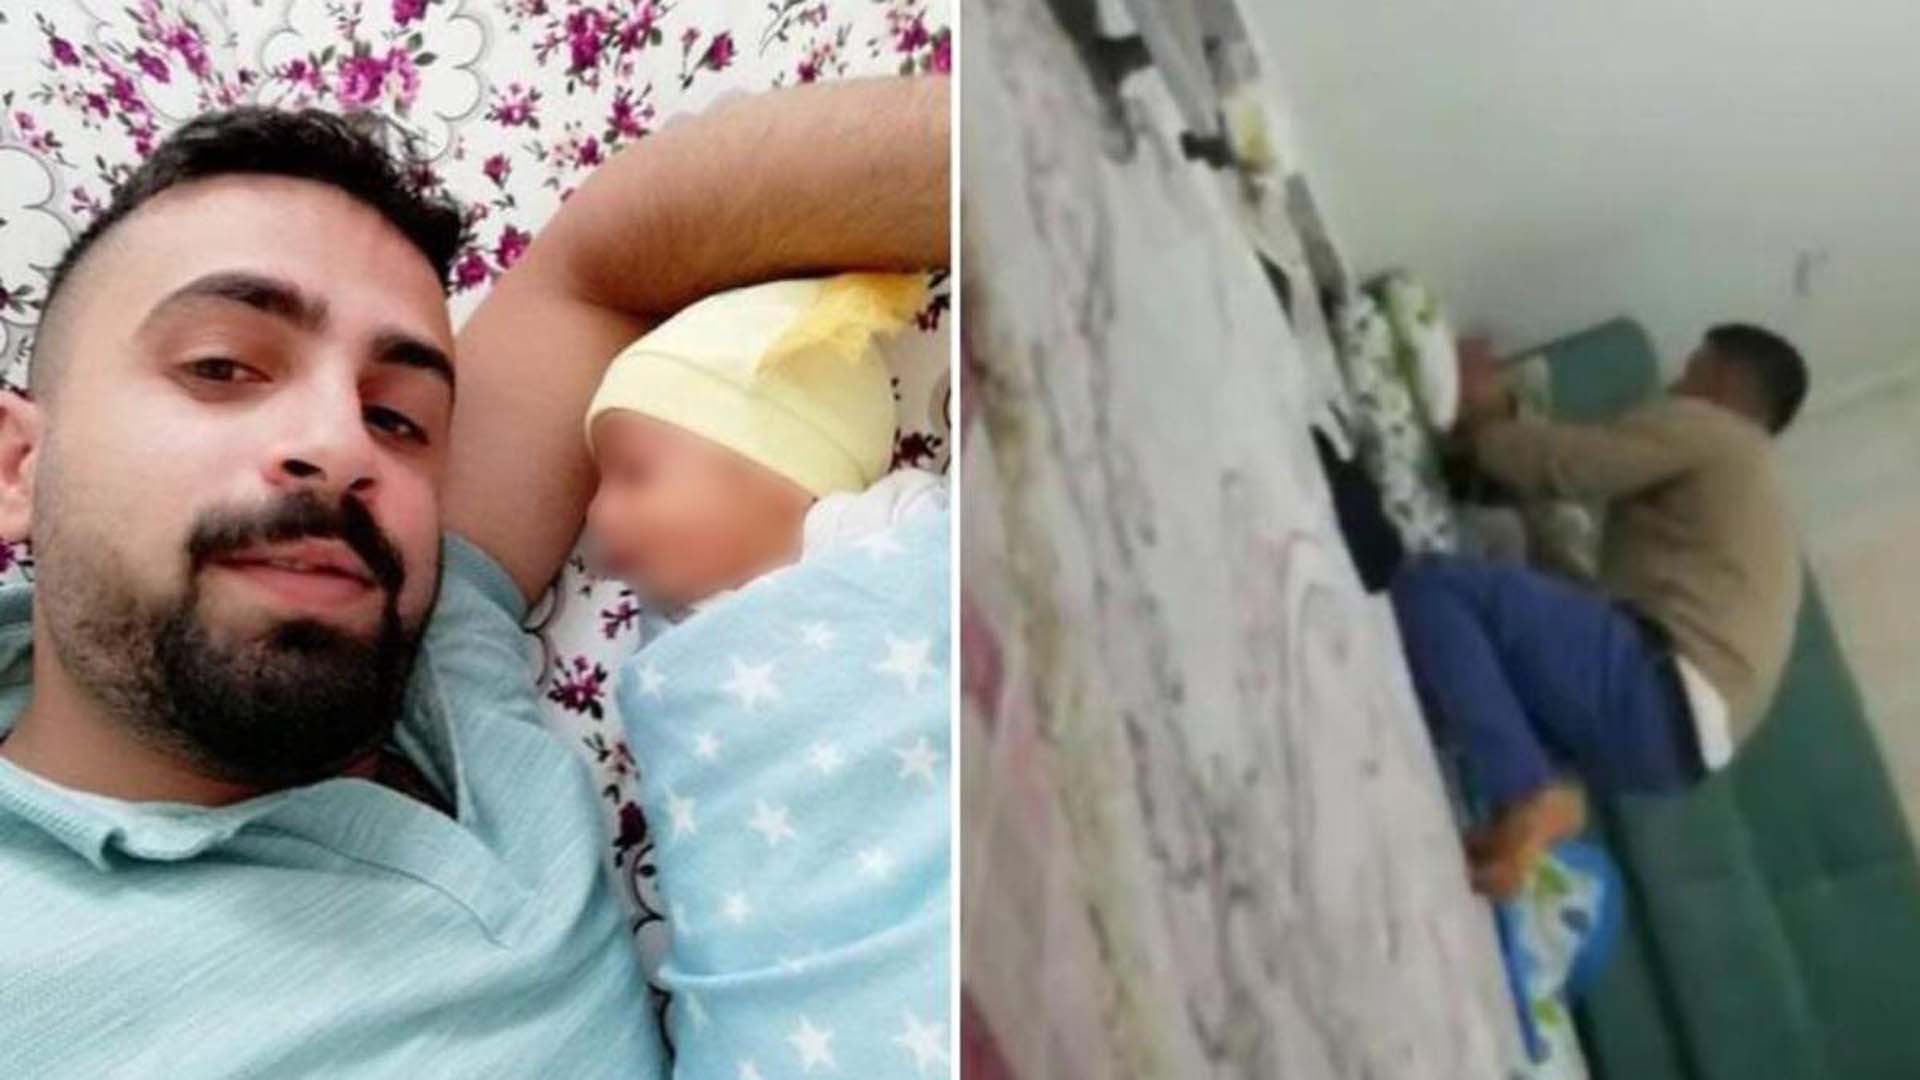 Bebeğini öldüresiye döven cani baba tutuklanmıştı' Cihan bebeğin sağlık durumu nasıl?